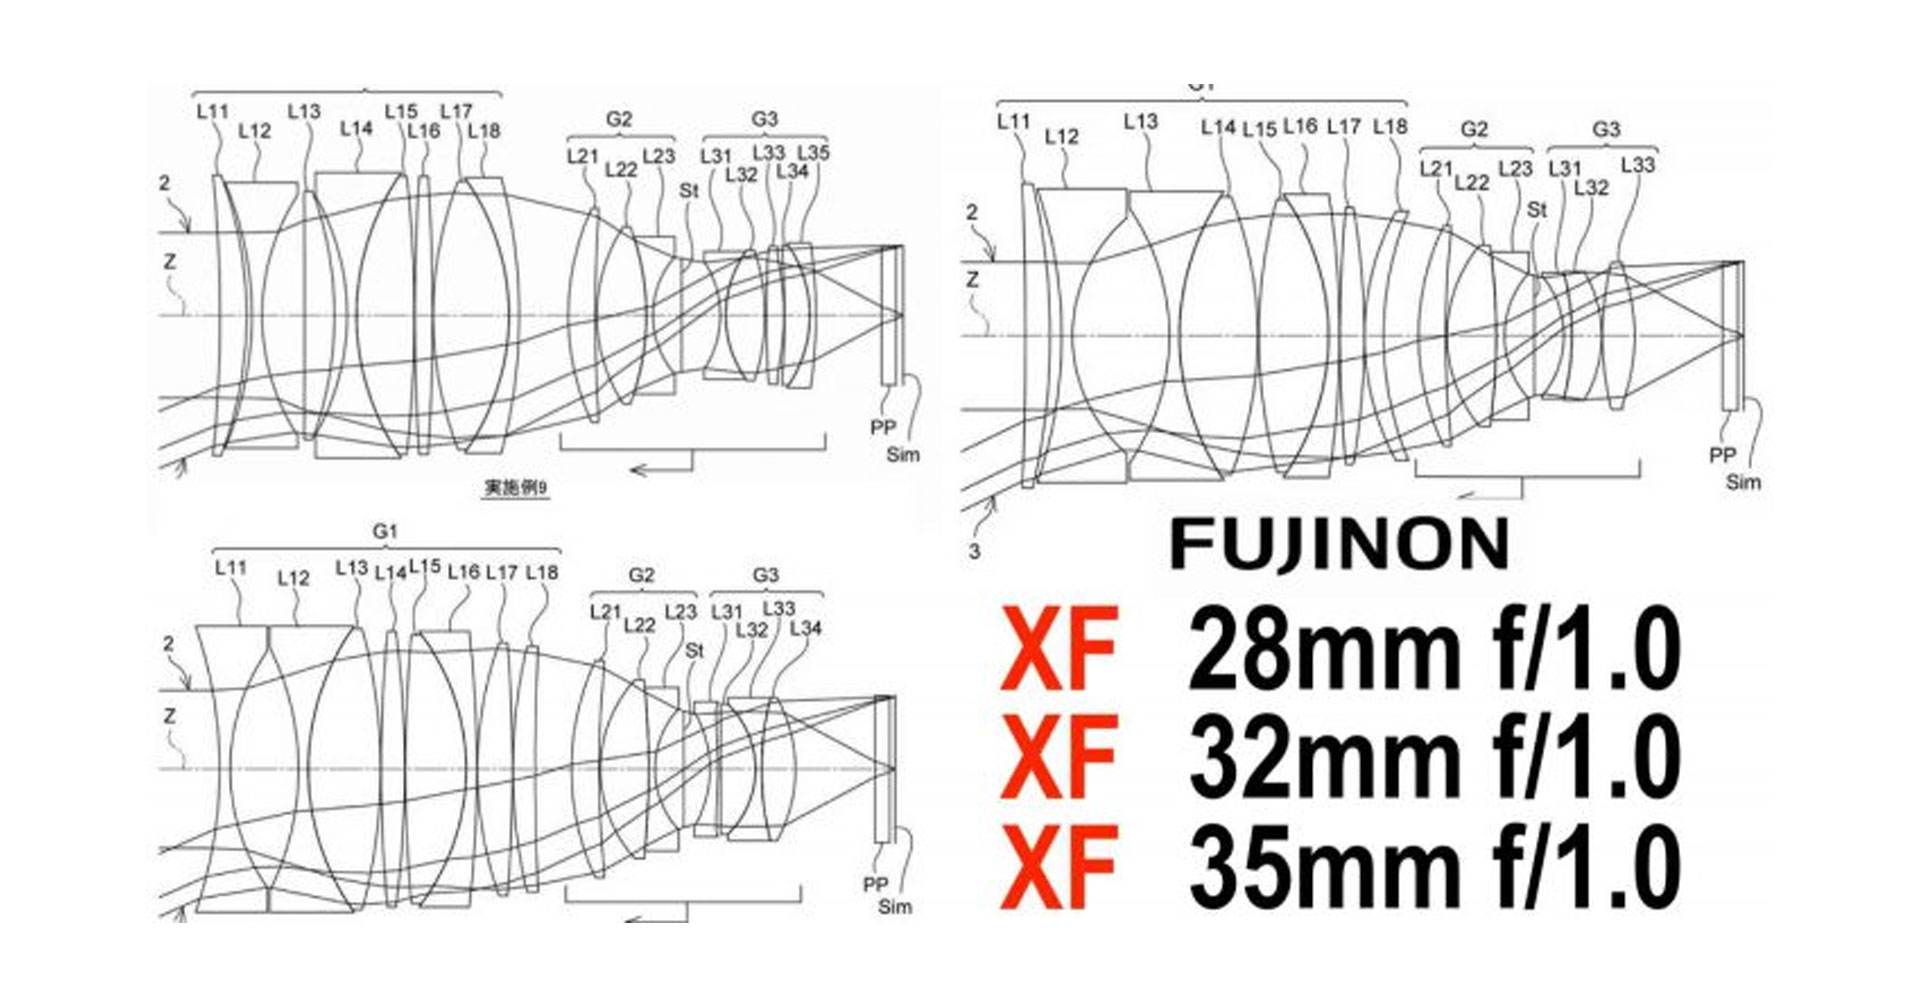 สิทธิบัตรเลนส์ใหม่! Fujinon XF 28mm f/1.0, 32mm f/1.0 และ 35mm f/1.0